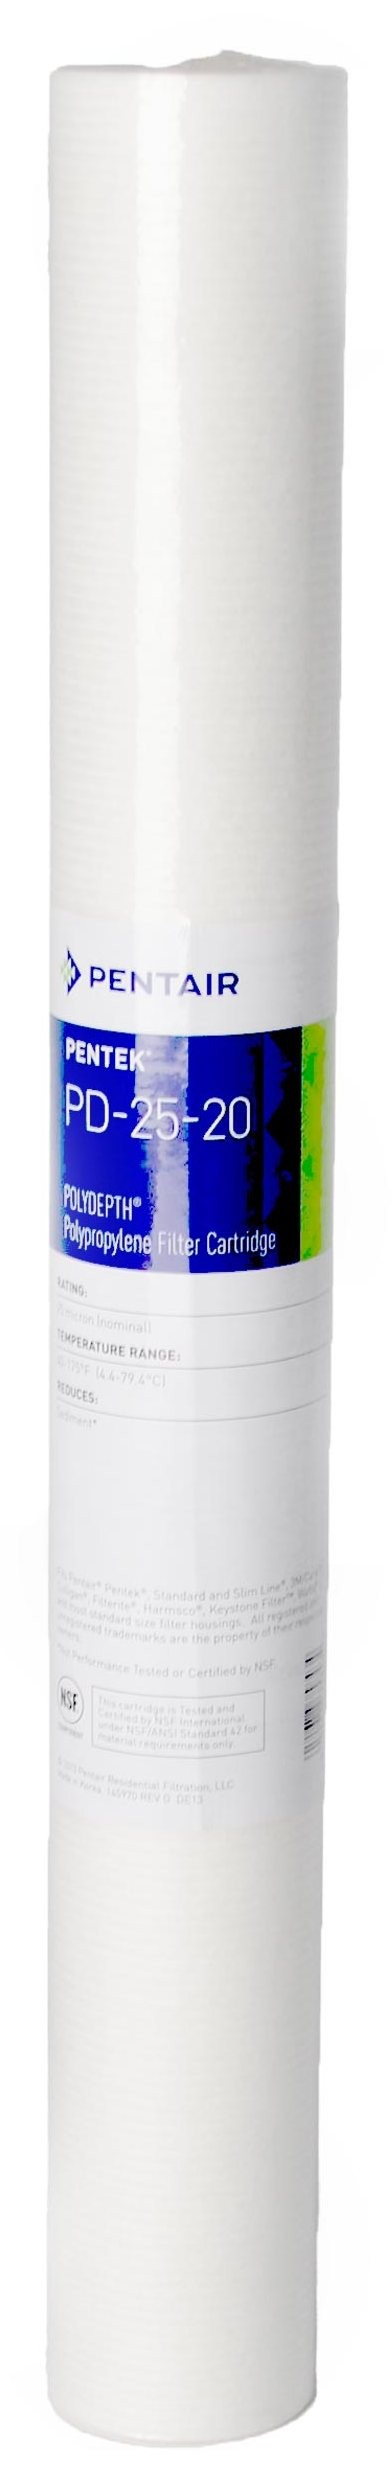 Картридж для фильтра Pentair PENTEK PD-25-20 POLYDEPTH 20sl' 25мкм (155758-43) в интернет-магазине, главное фото